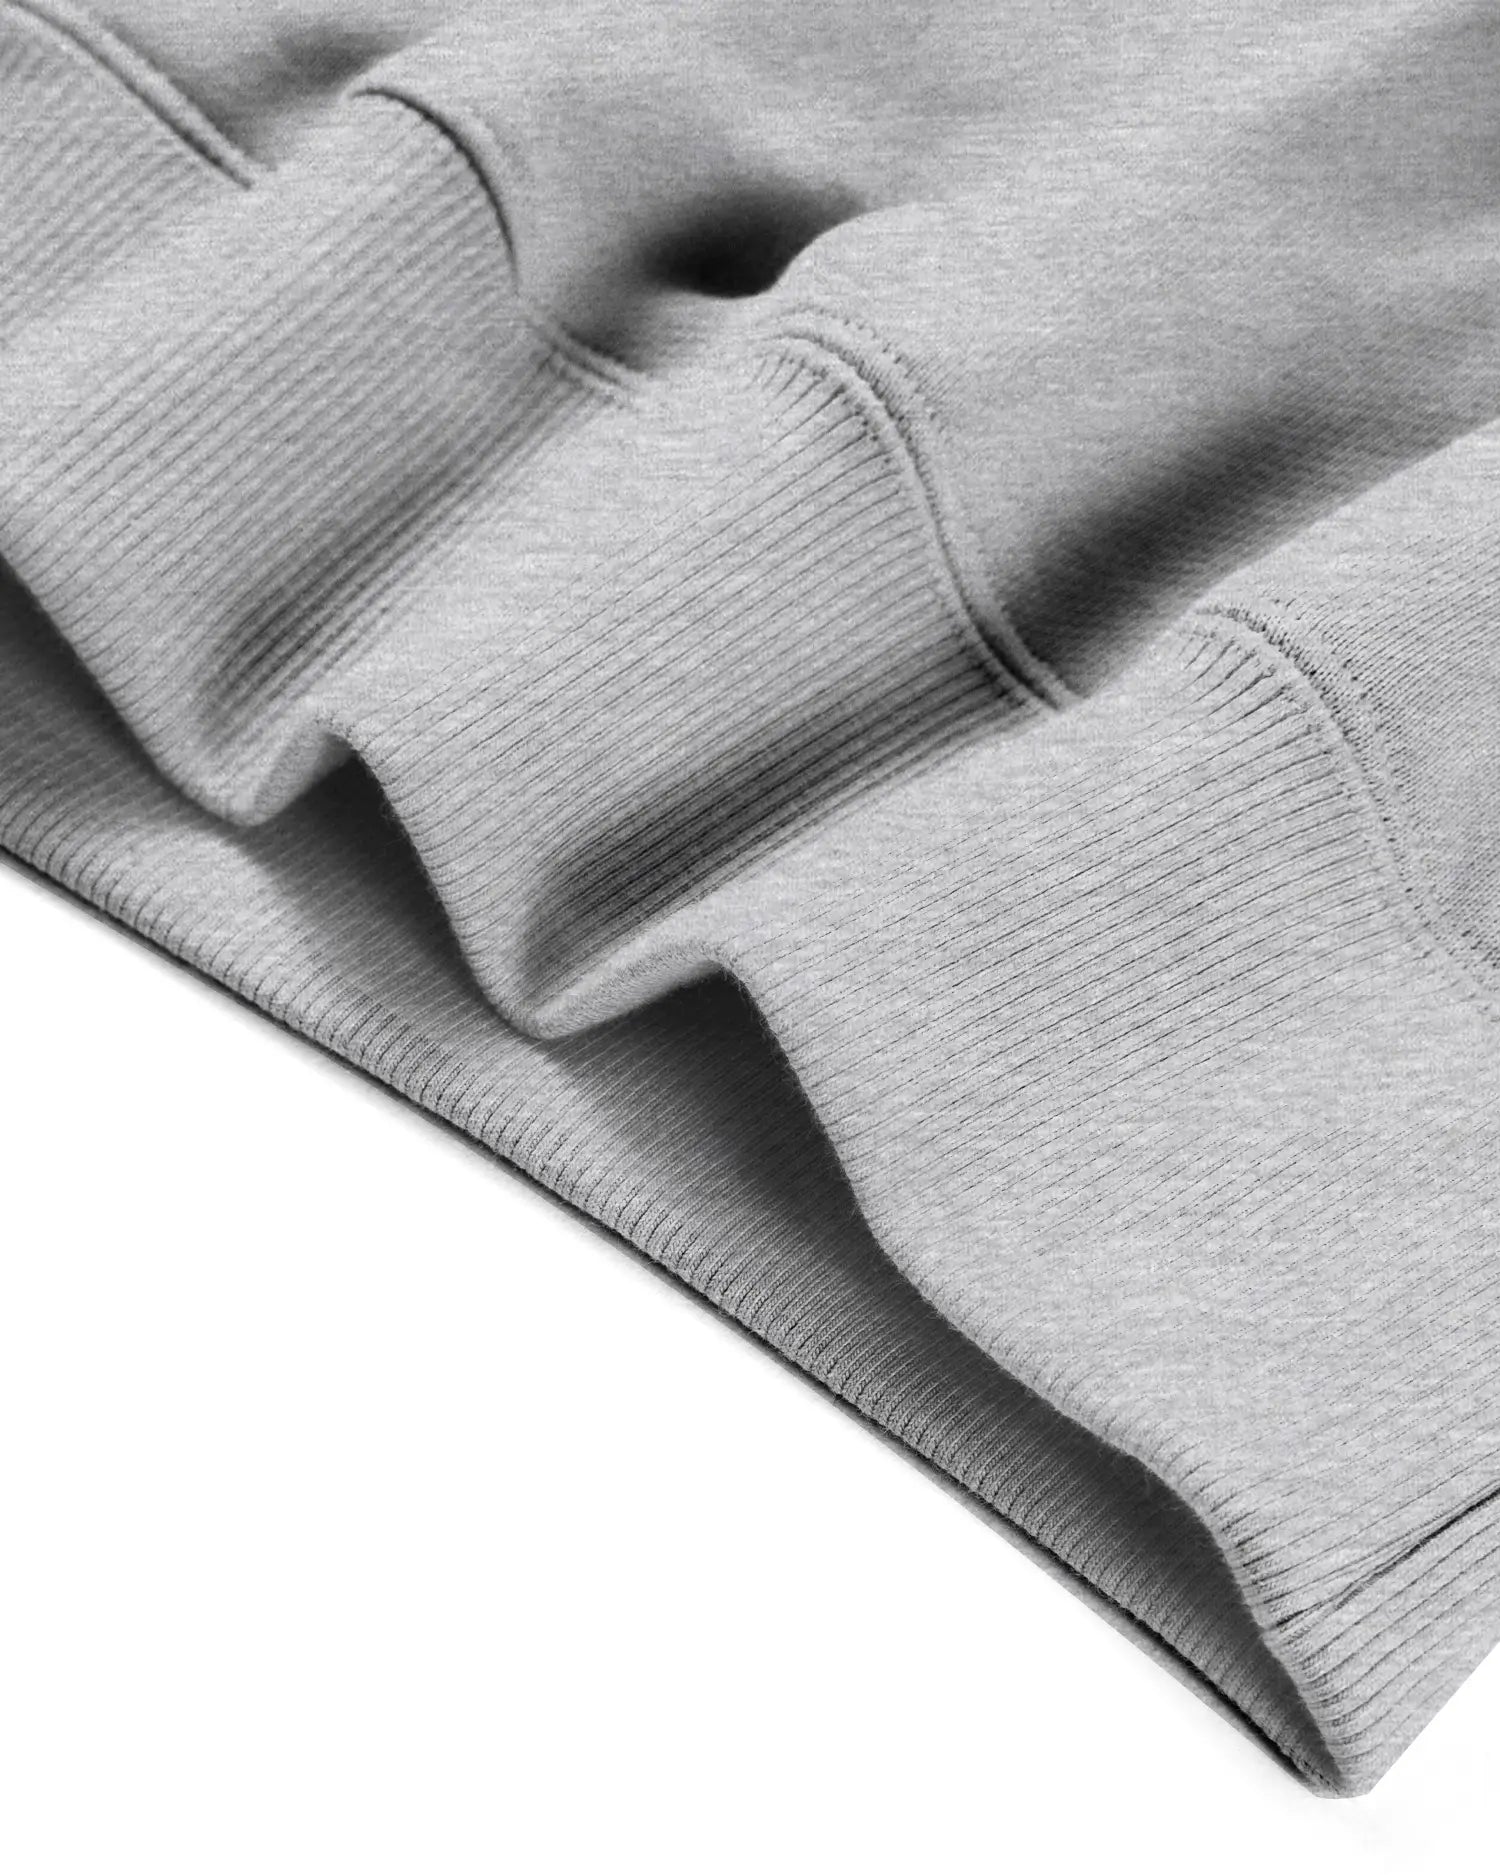 Men's Mixed Fabric Crew Sweatshirt in Gray 11 #gray